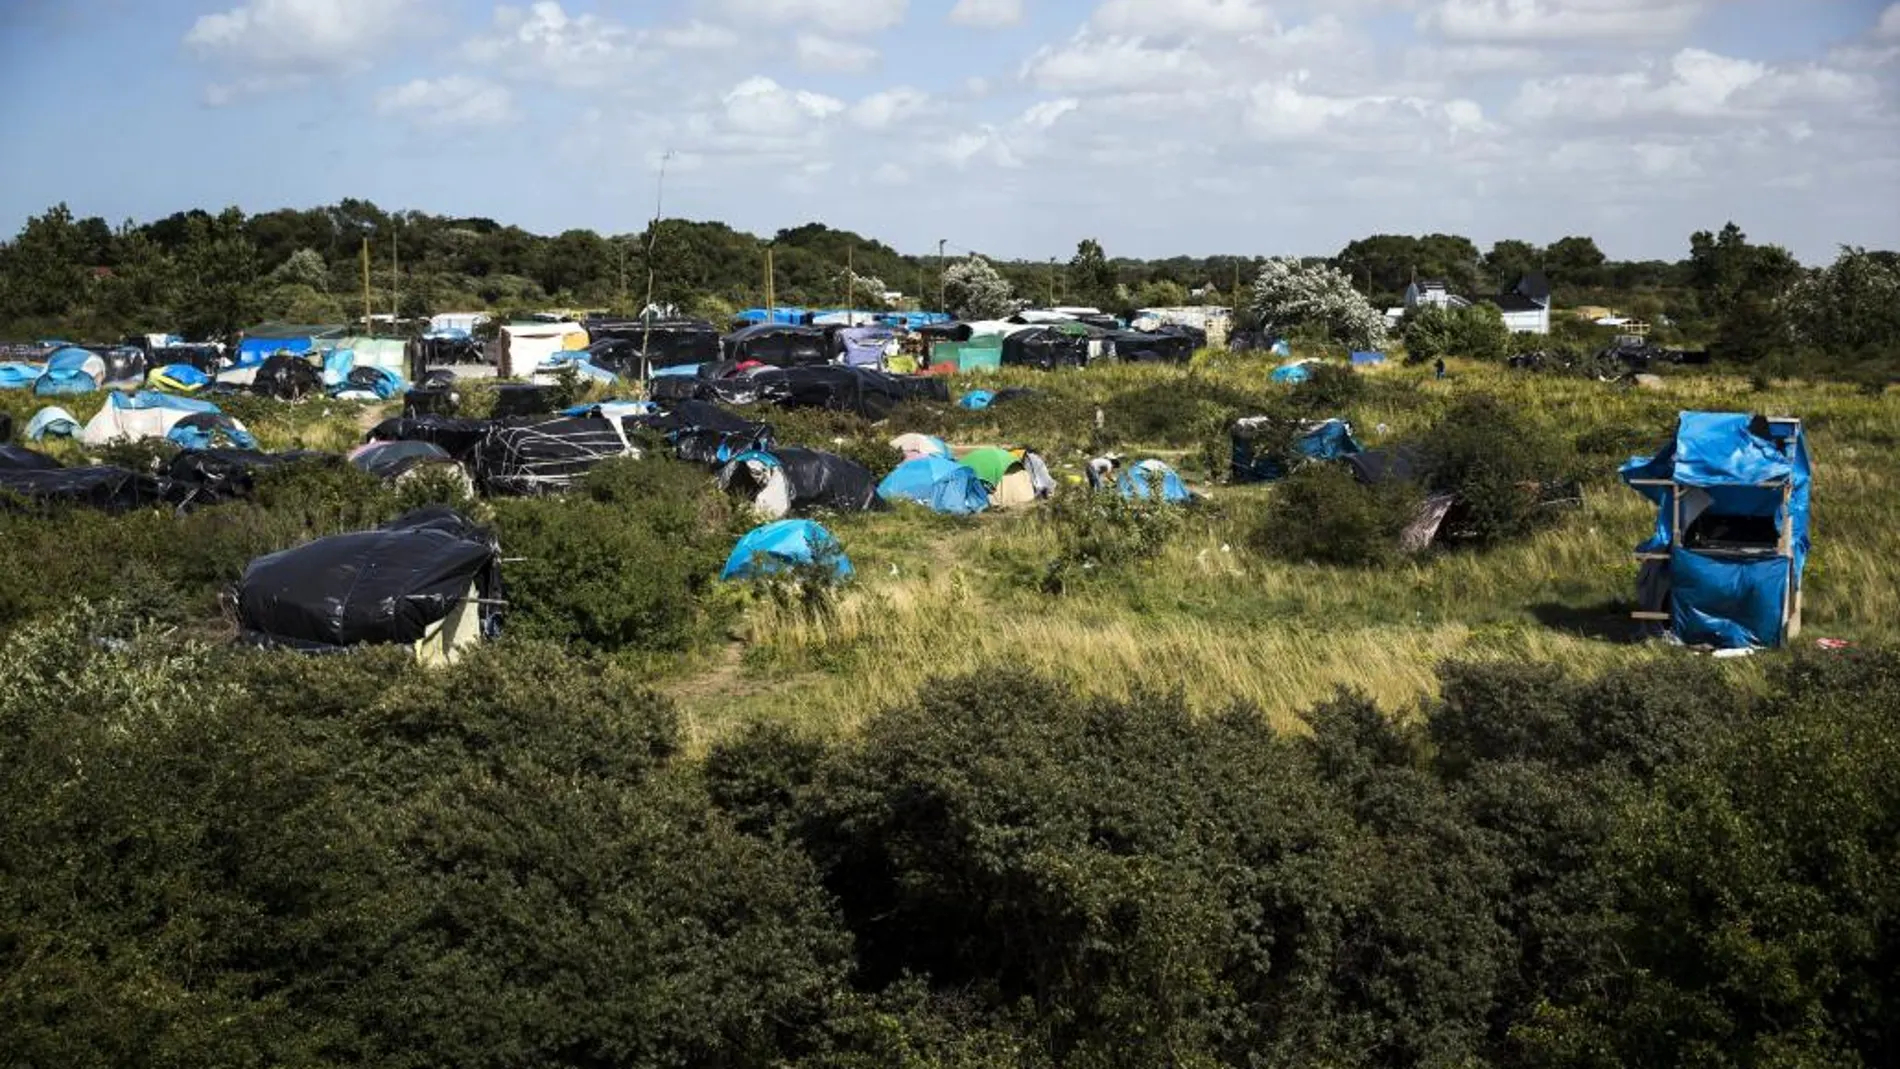 Vista general del campo de refugiados conocido como "la jungla"cerca de Calais, Francia